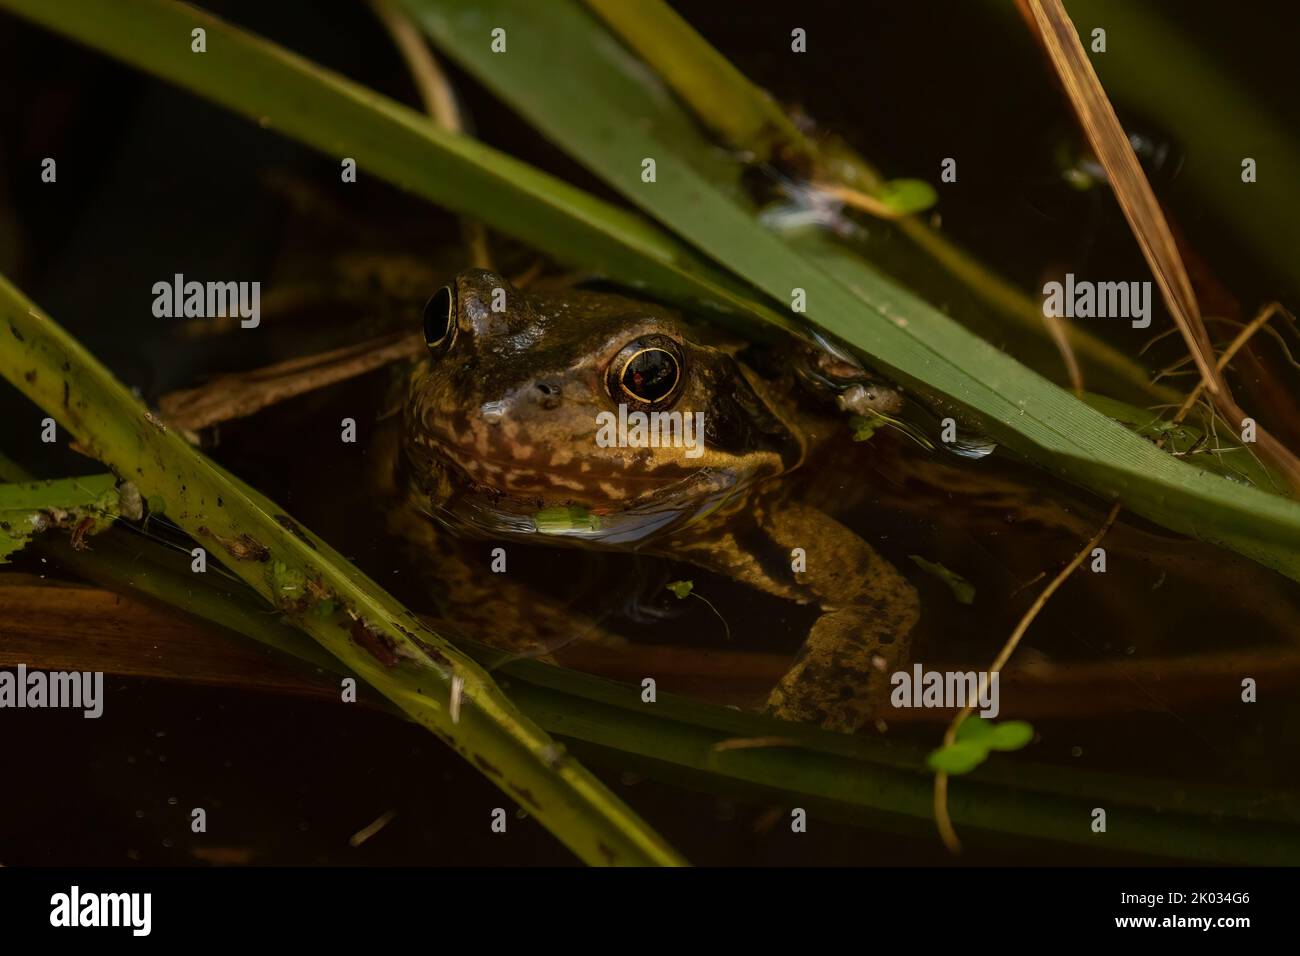 Un gros plan d'une grenouille commune européenne (Rana temporania) se cachant dans des roseaux dans un étang Banque D'Images